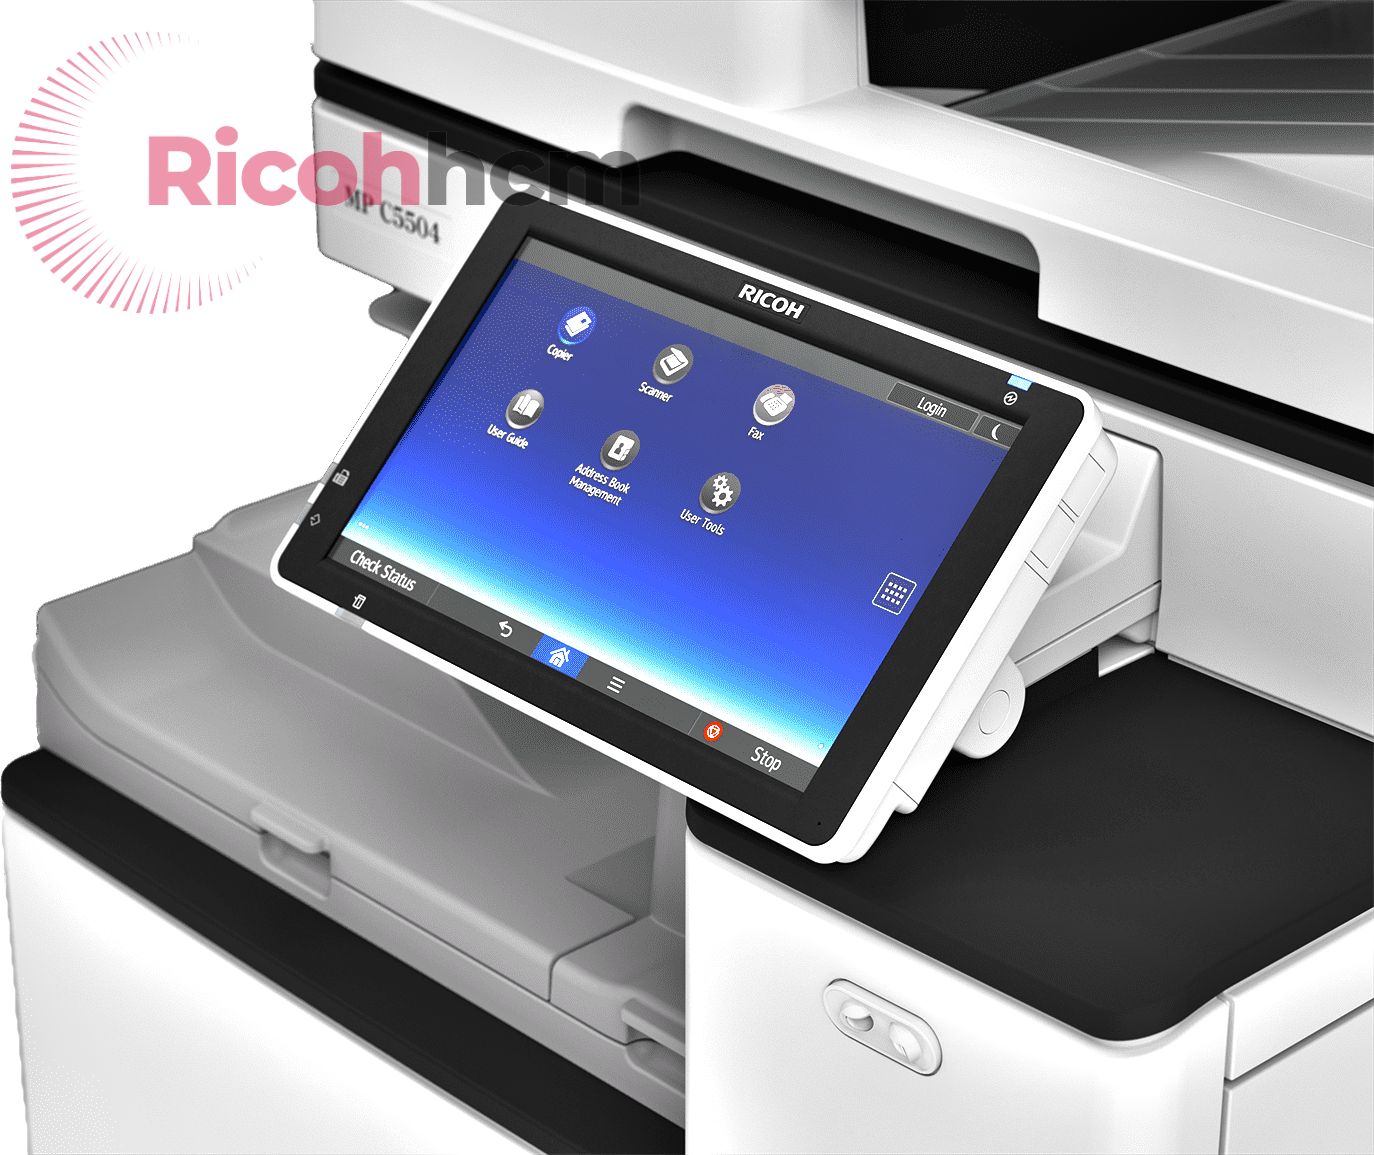 Kể từ khi xuất hiện trên thị trường đến nay, Photocopy RICOHHCM - công ty bán máy photocopy quận Bình Tân có uy tín luôn có các thế mạnh nổi bật: sản phẩm đa dạng, đội ngũ tư vấn chuyên nghiệp, chỉ kinh doanh máy chính hãng, bảo hành bảo dưỡng định kỳ.